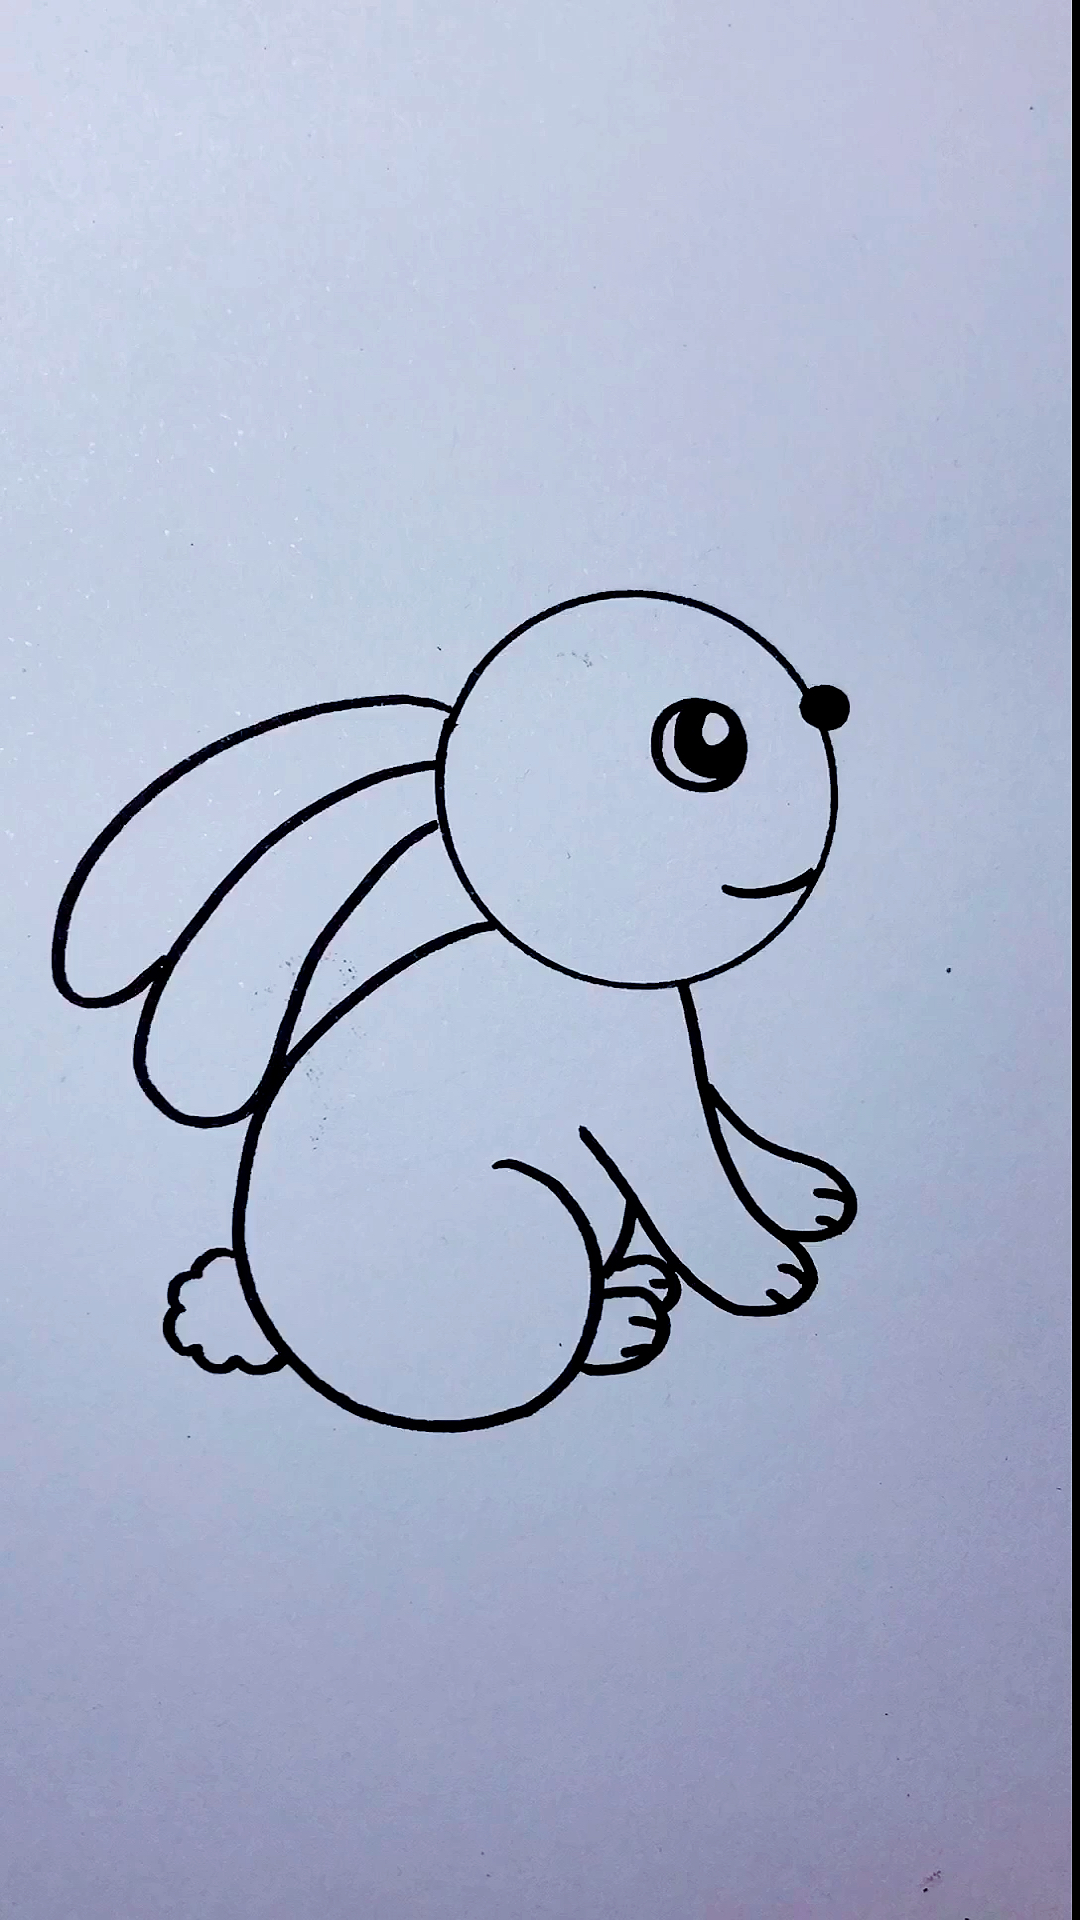 怎样画小白兔?图片